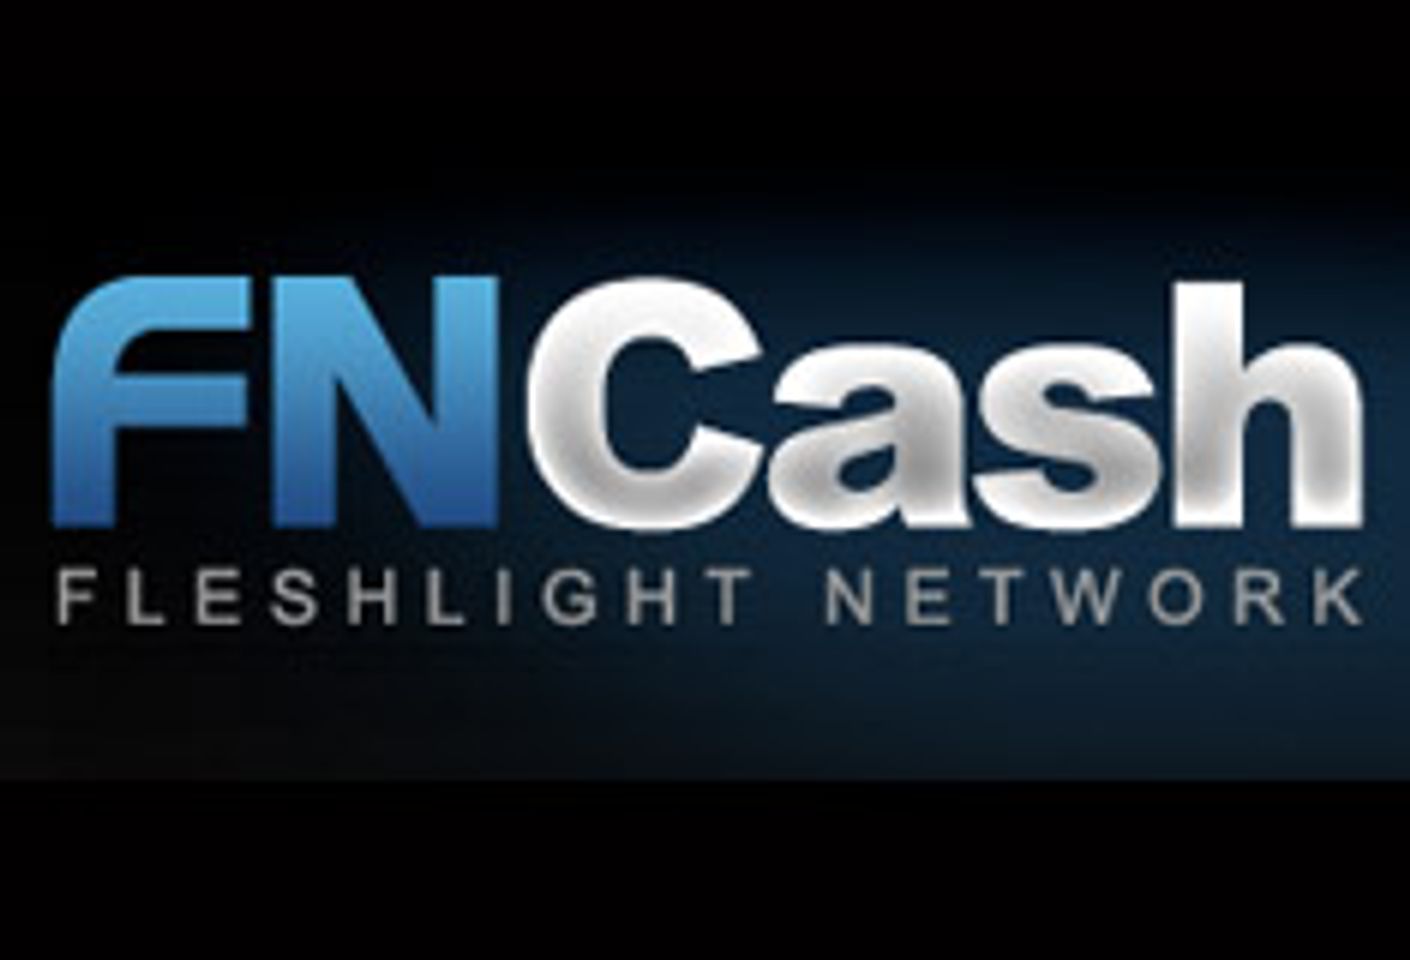 Fleshlight Revamps Affiliate Website, Offers $50.00 Sign-up Bonus